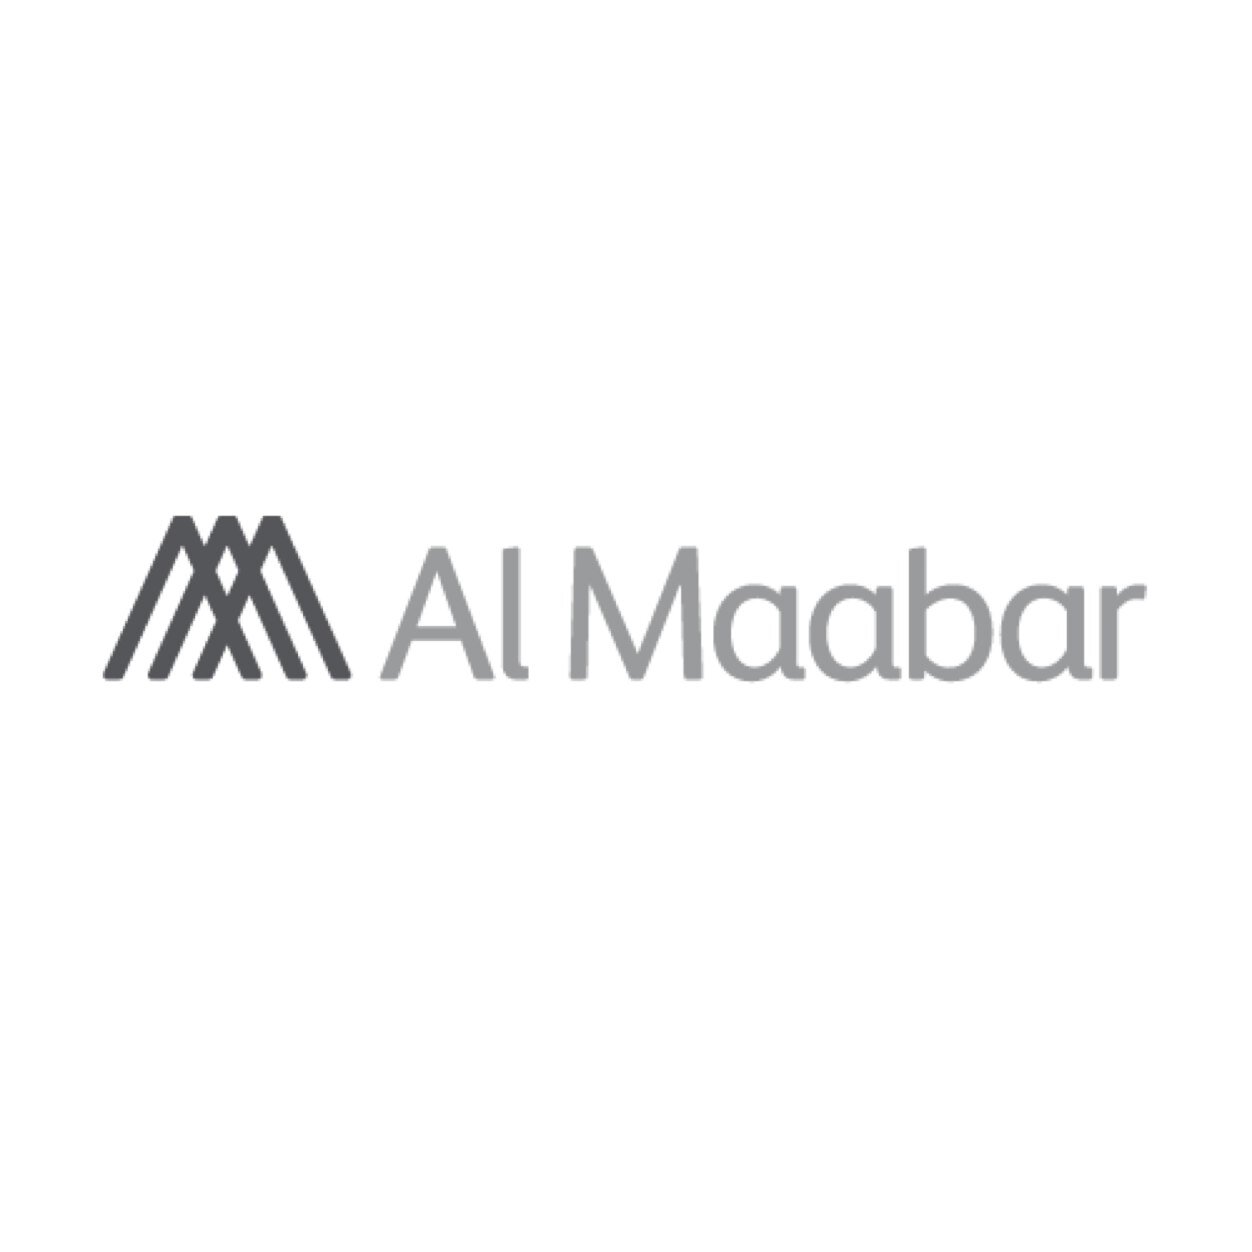 Al Maabar